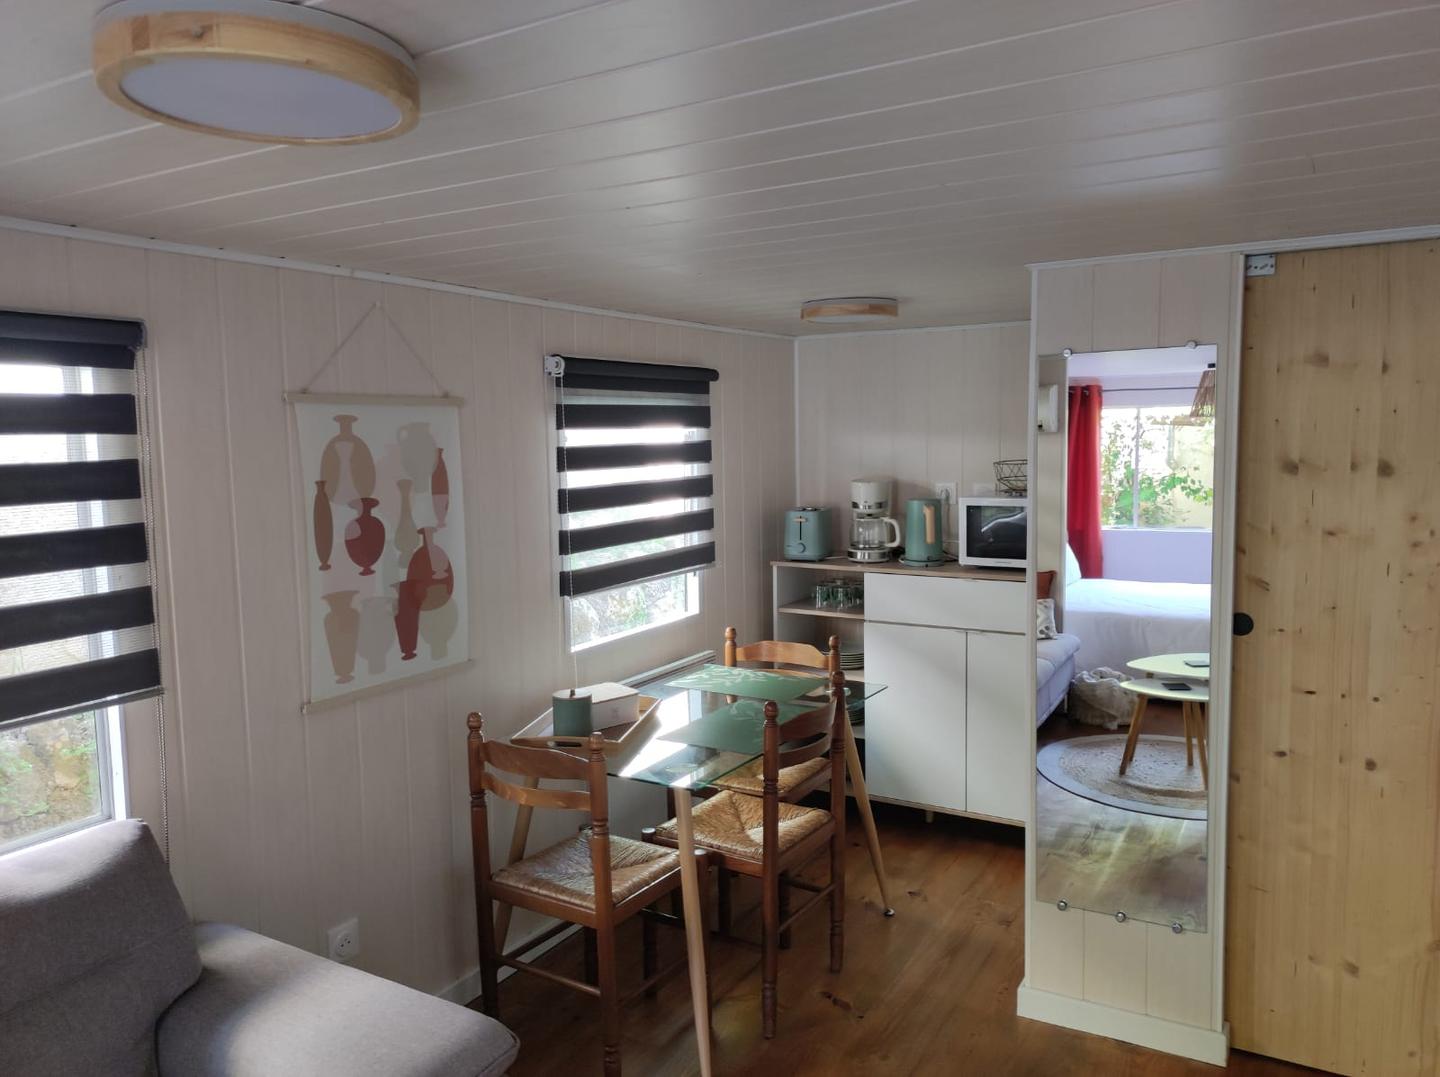 Hôte GreenGo: "La Casetta" Charmand bungalow tout confort - Image 5